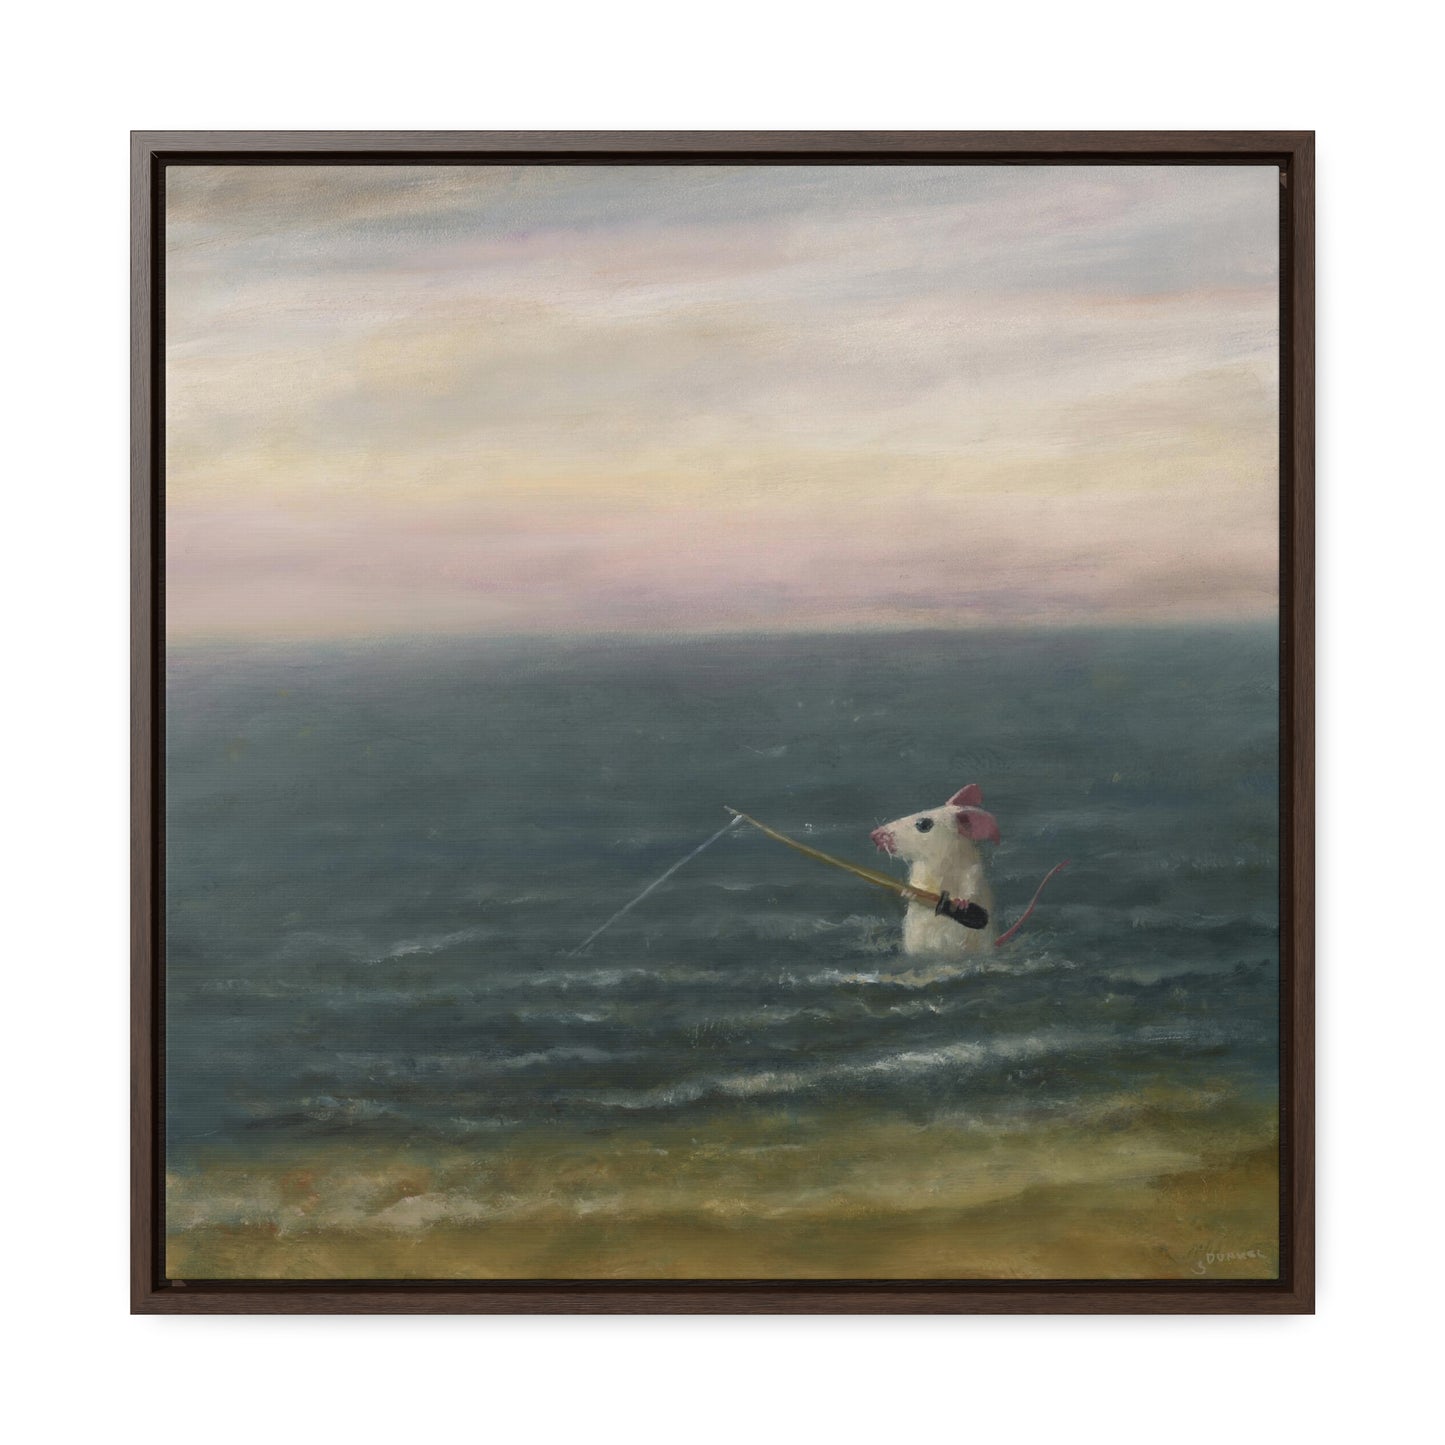 Stuart Dunkel: "Gone Fishing" - Framed Canvas